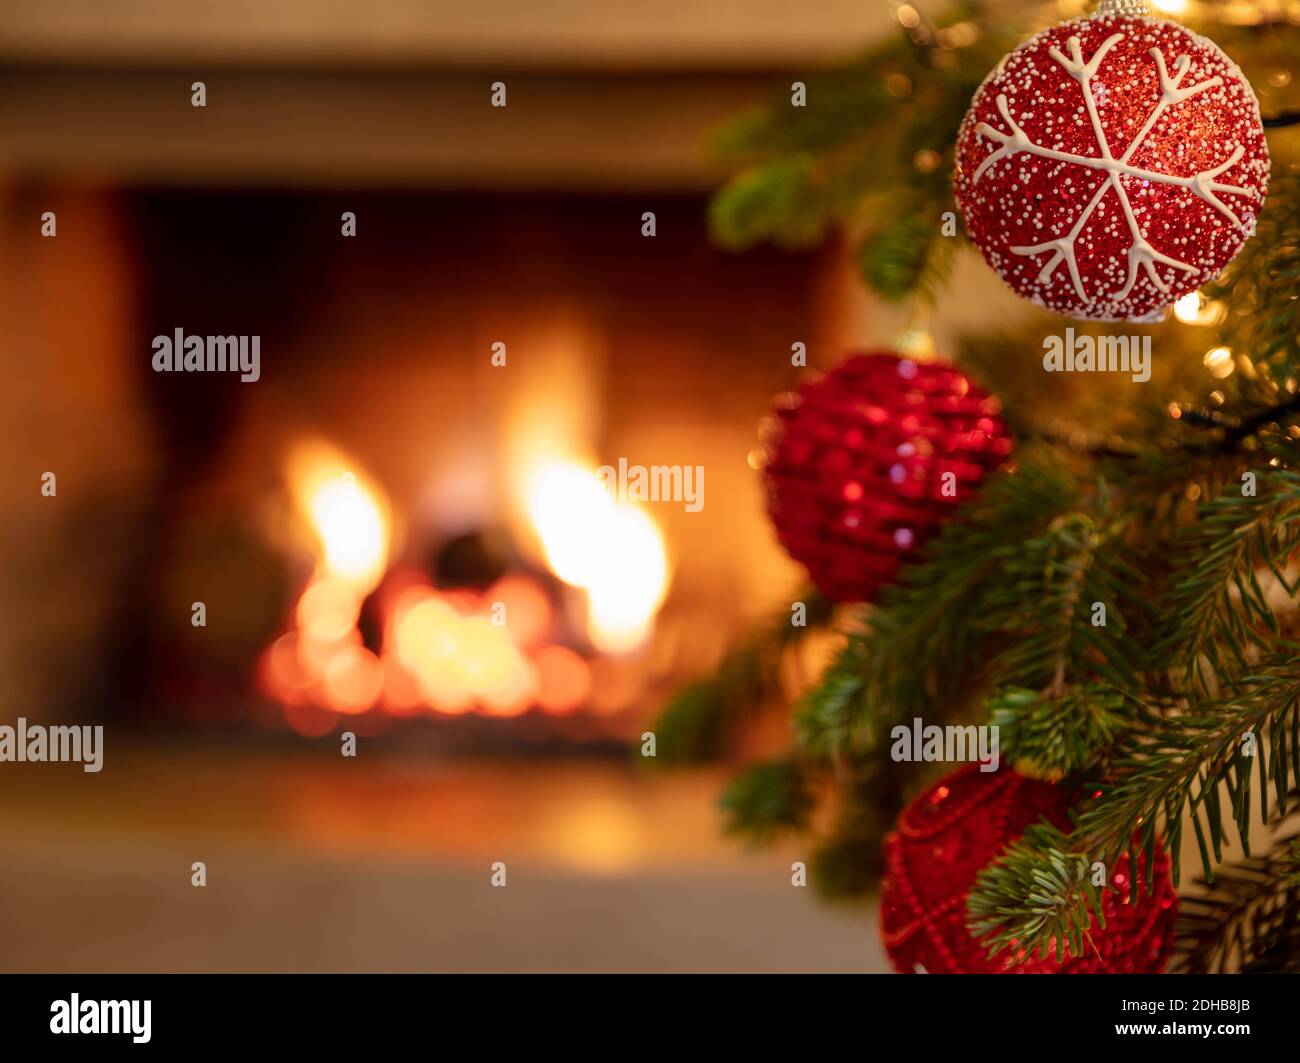 Christmas tree, burning fireplace background. Warm cozy Xmas holiday ...